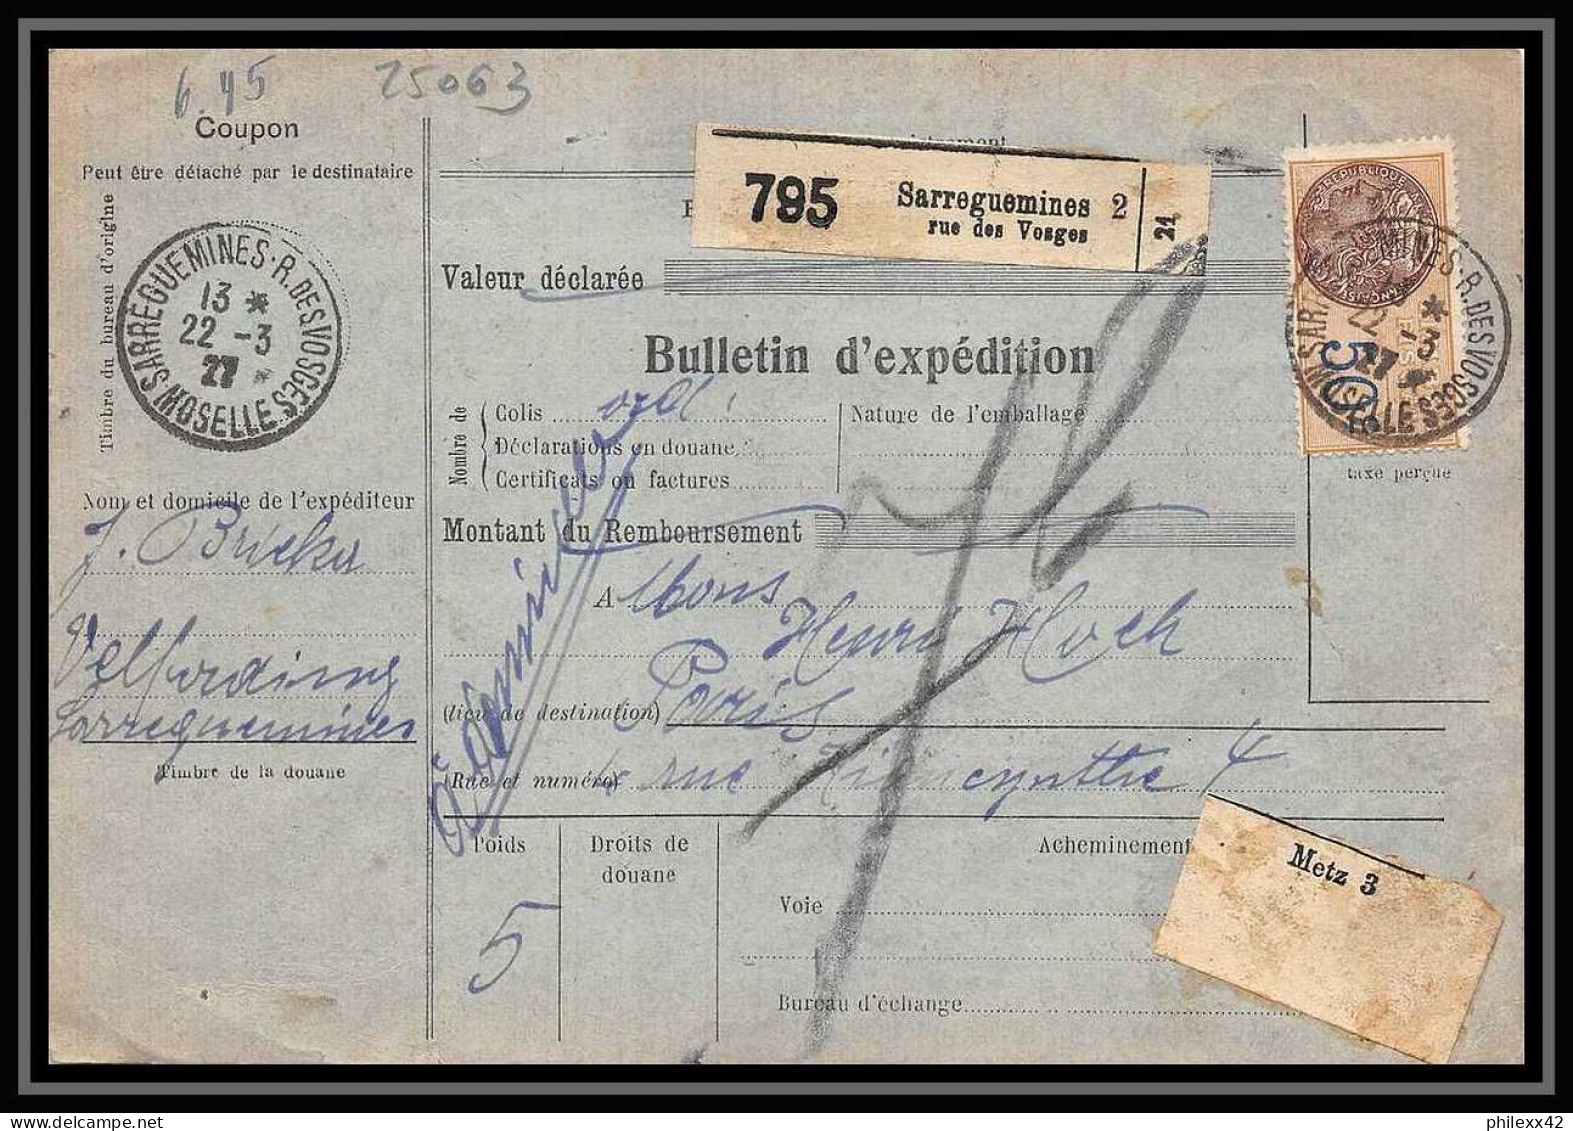 25063 Bulletin D'expédition France Colis Postaux Fiscal Haut Rhin 1927 Sarreguemines Semeuse + Merson 145+206 - Lettres & Documents